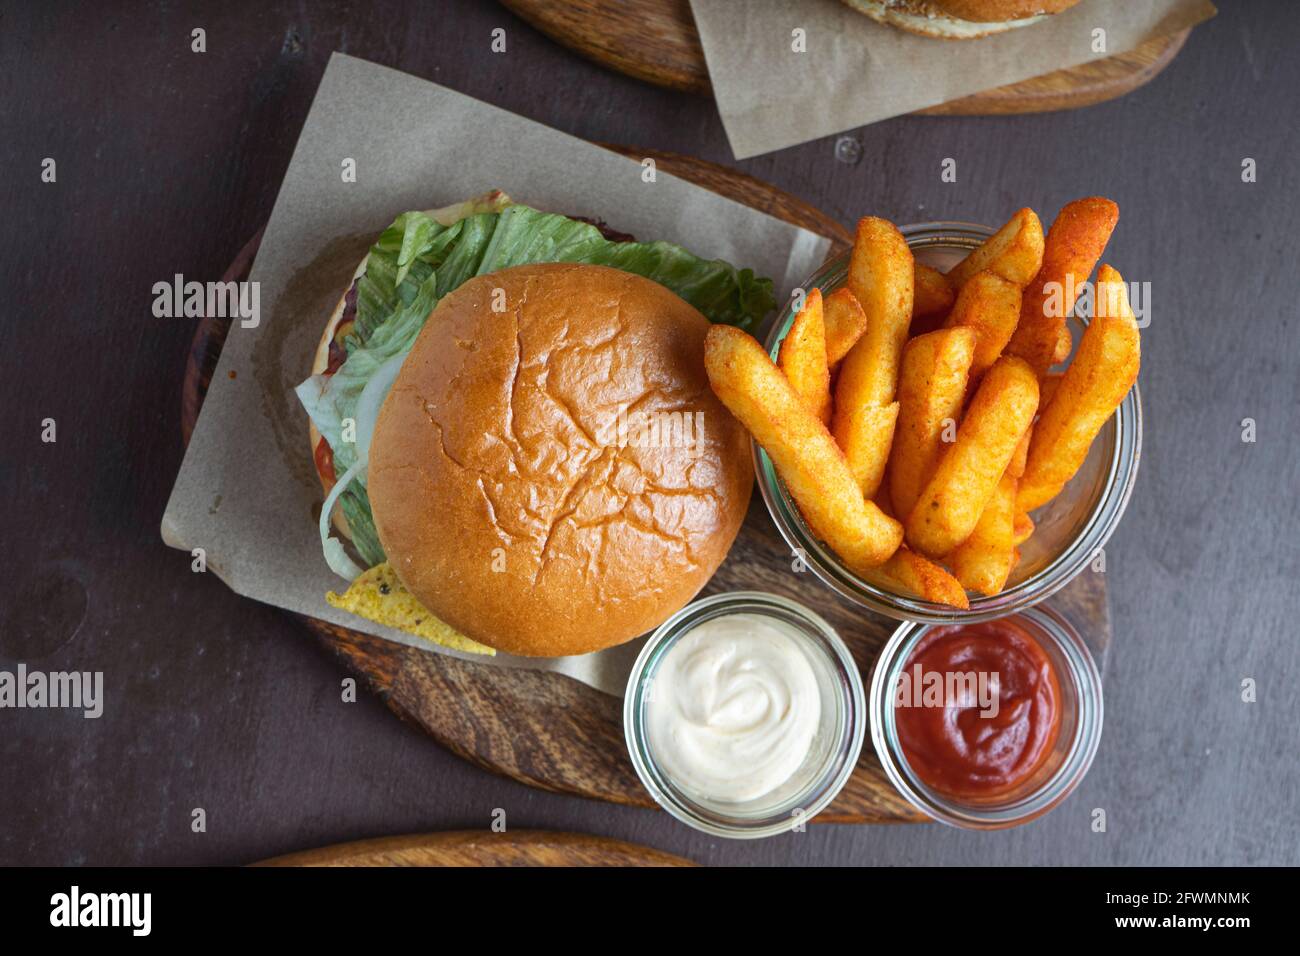 Vue aérienne du hamburger avec frites sur la table du restaurant Banque D'Images